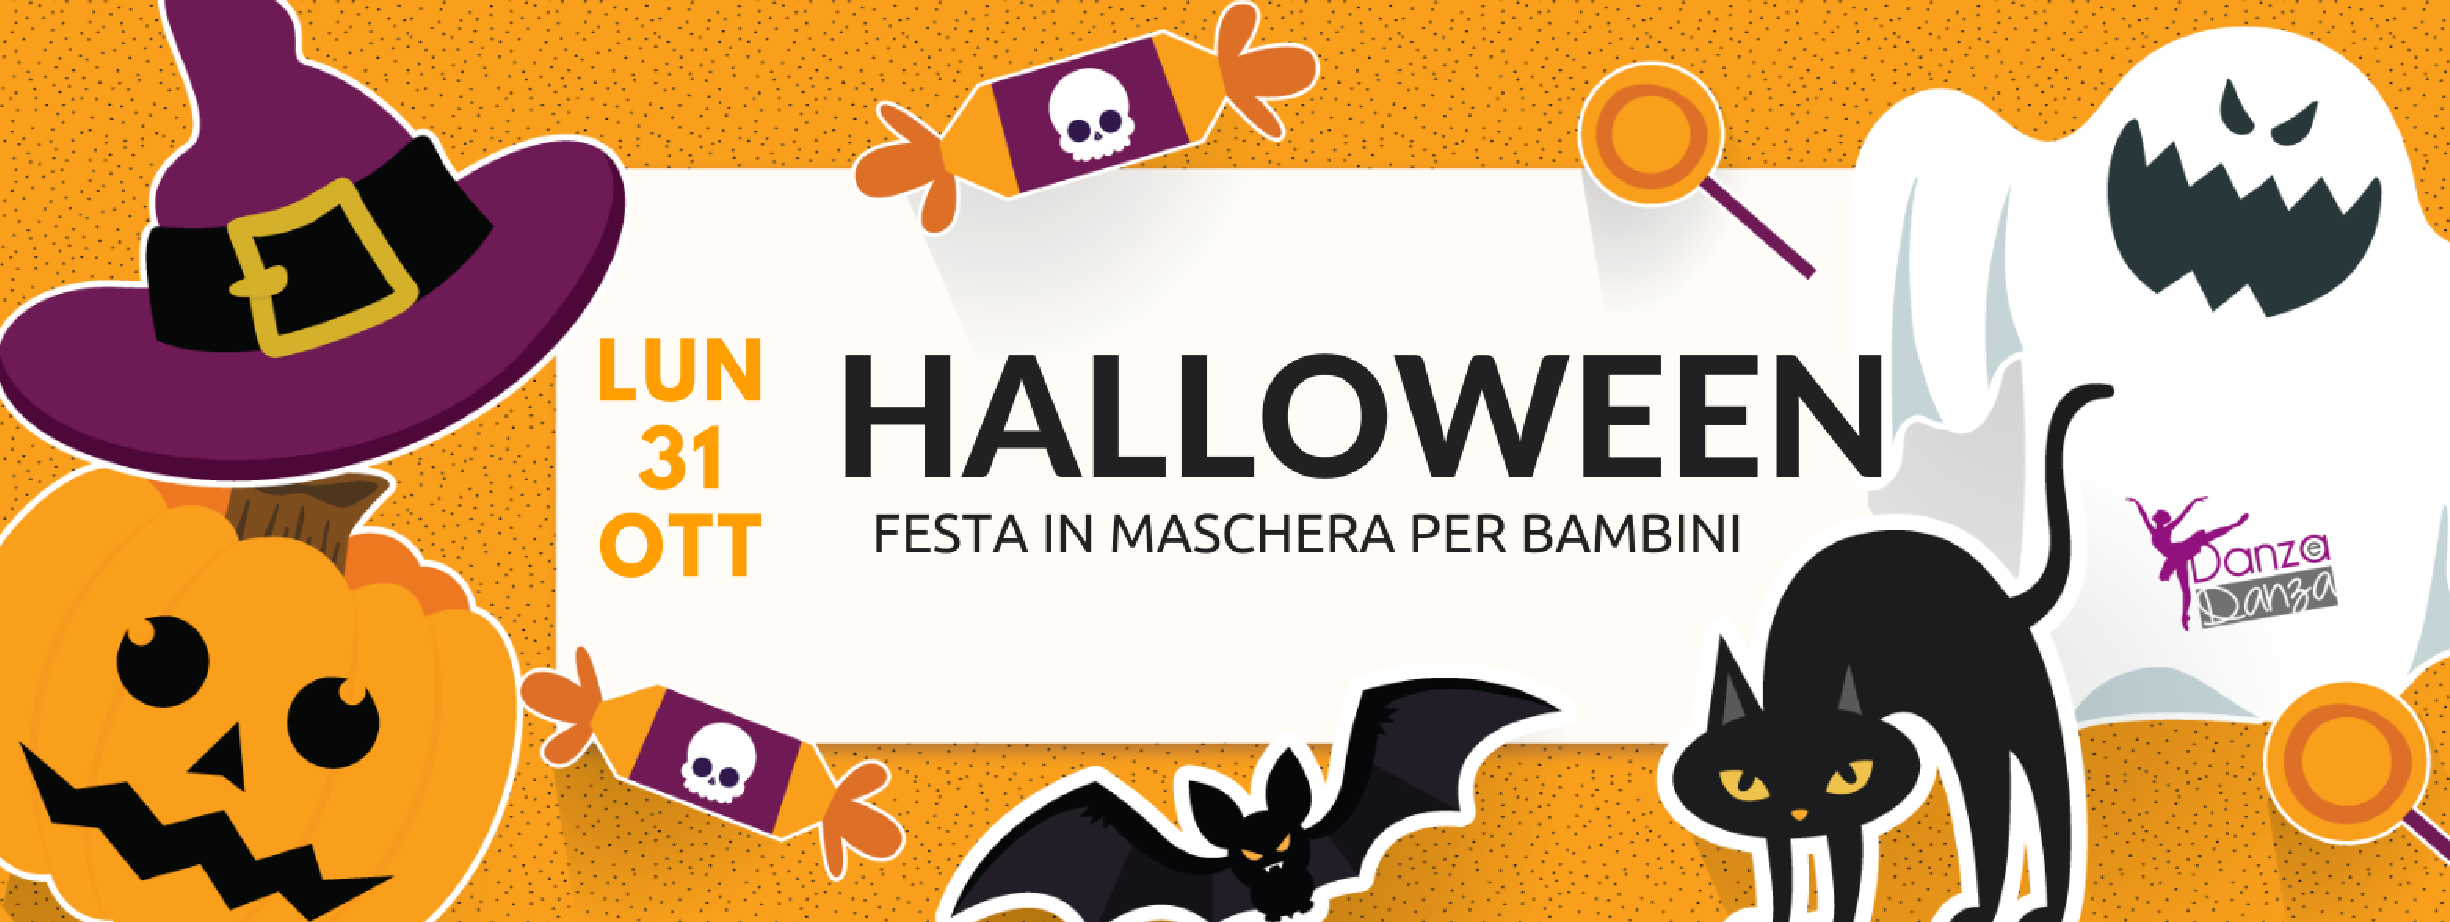 Festa di Halloween per bambini a Camisano Vicentino!